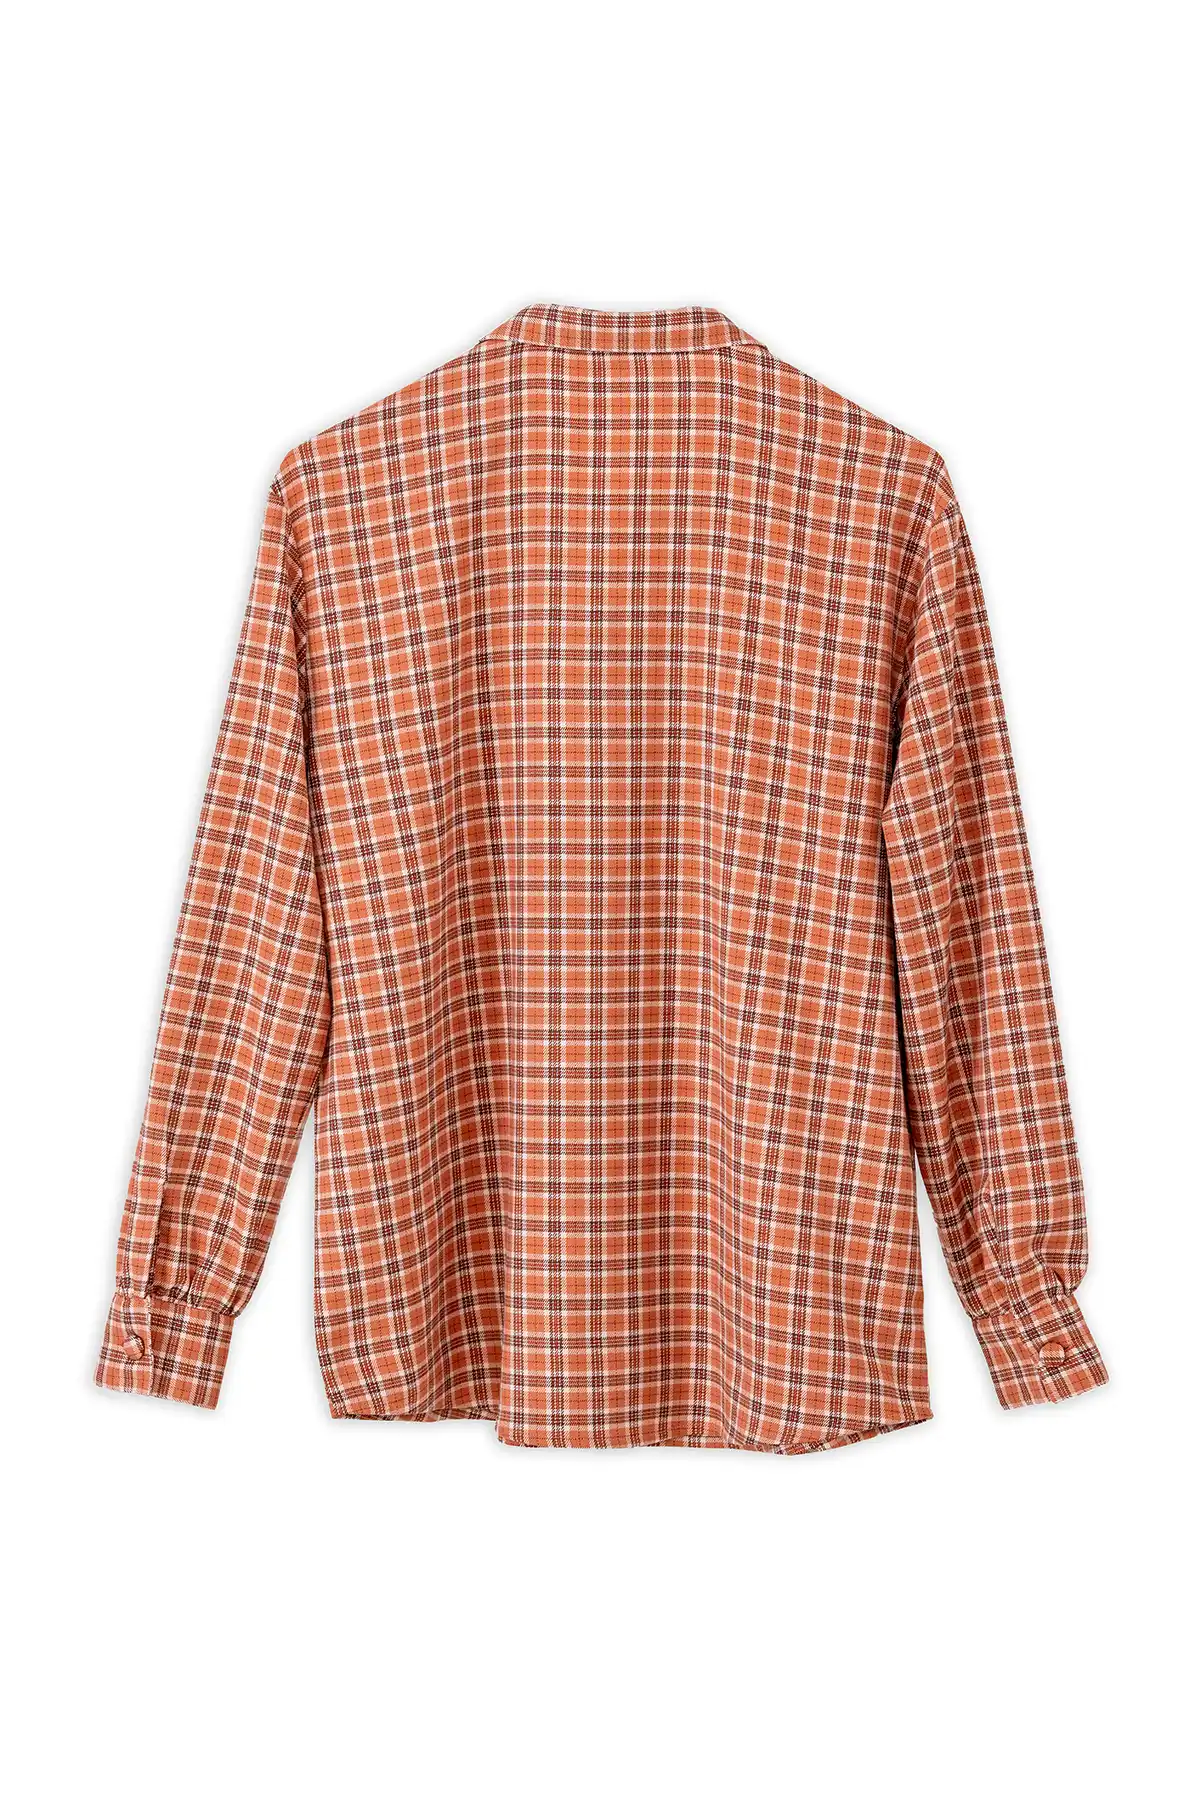 Flannel Check Shirt - Multi-Colored Check